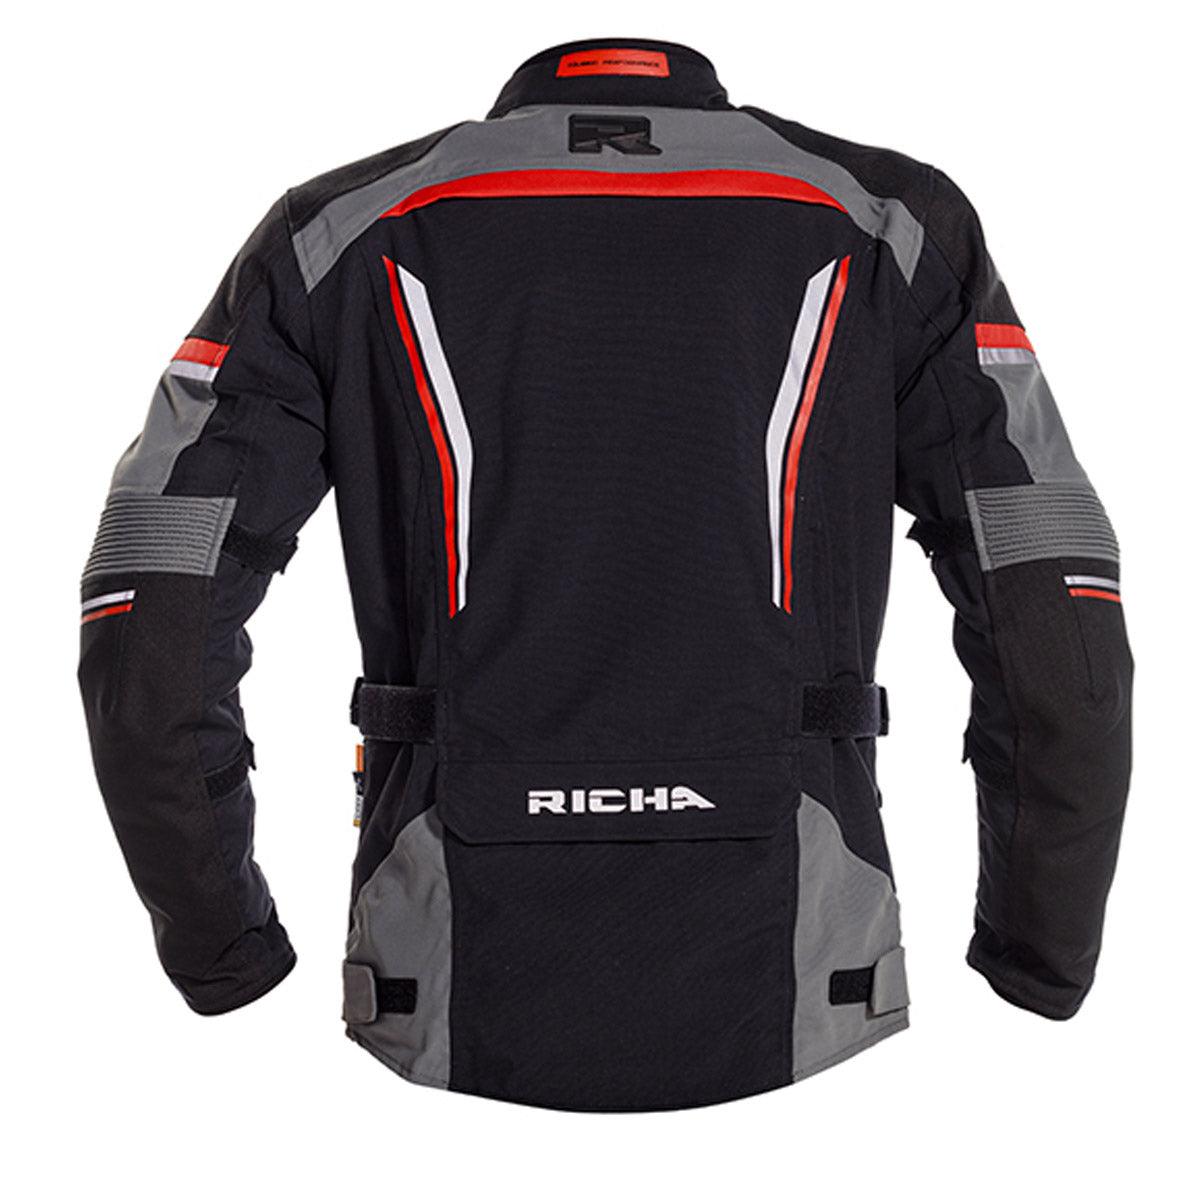 Richa Infinity 2 Pro Jacket WP Black Grey Red - Motorcycle Clothing